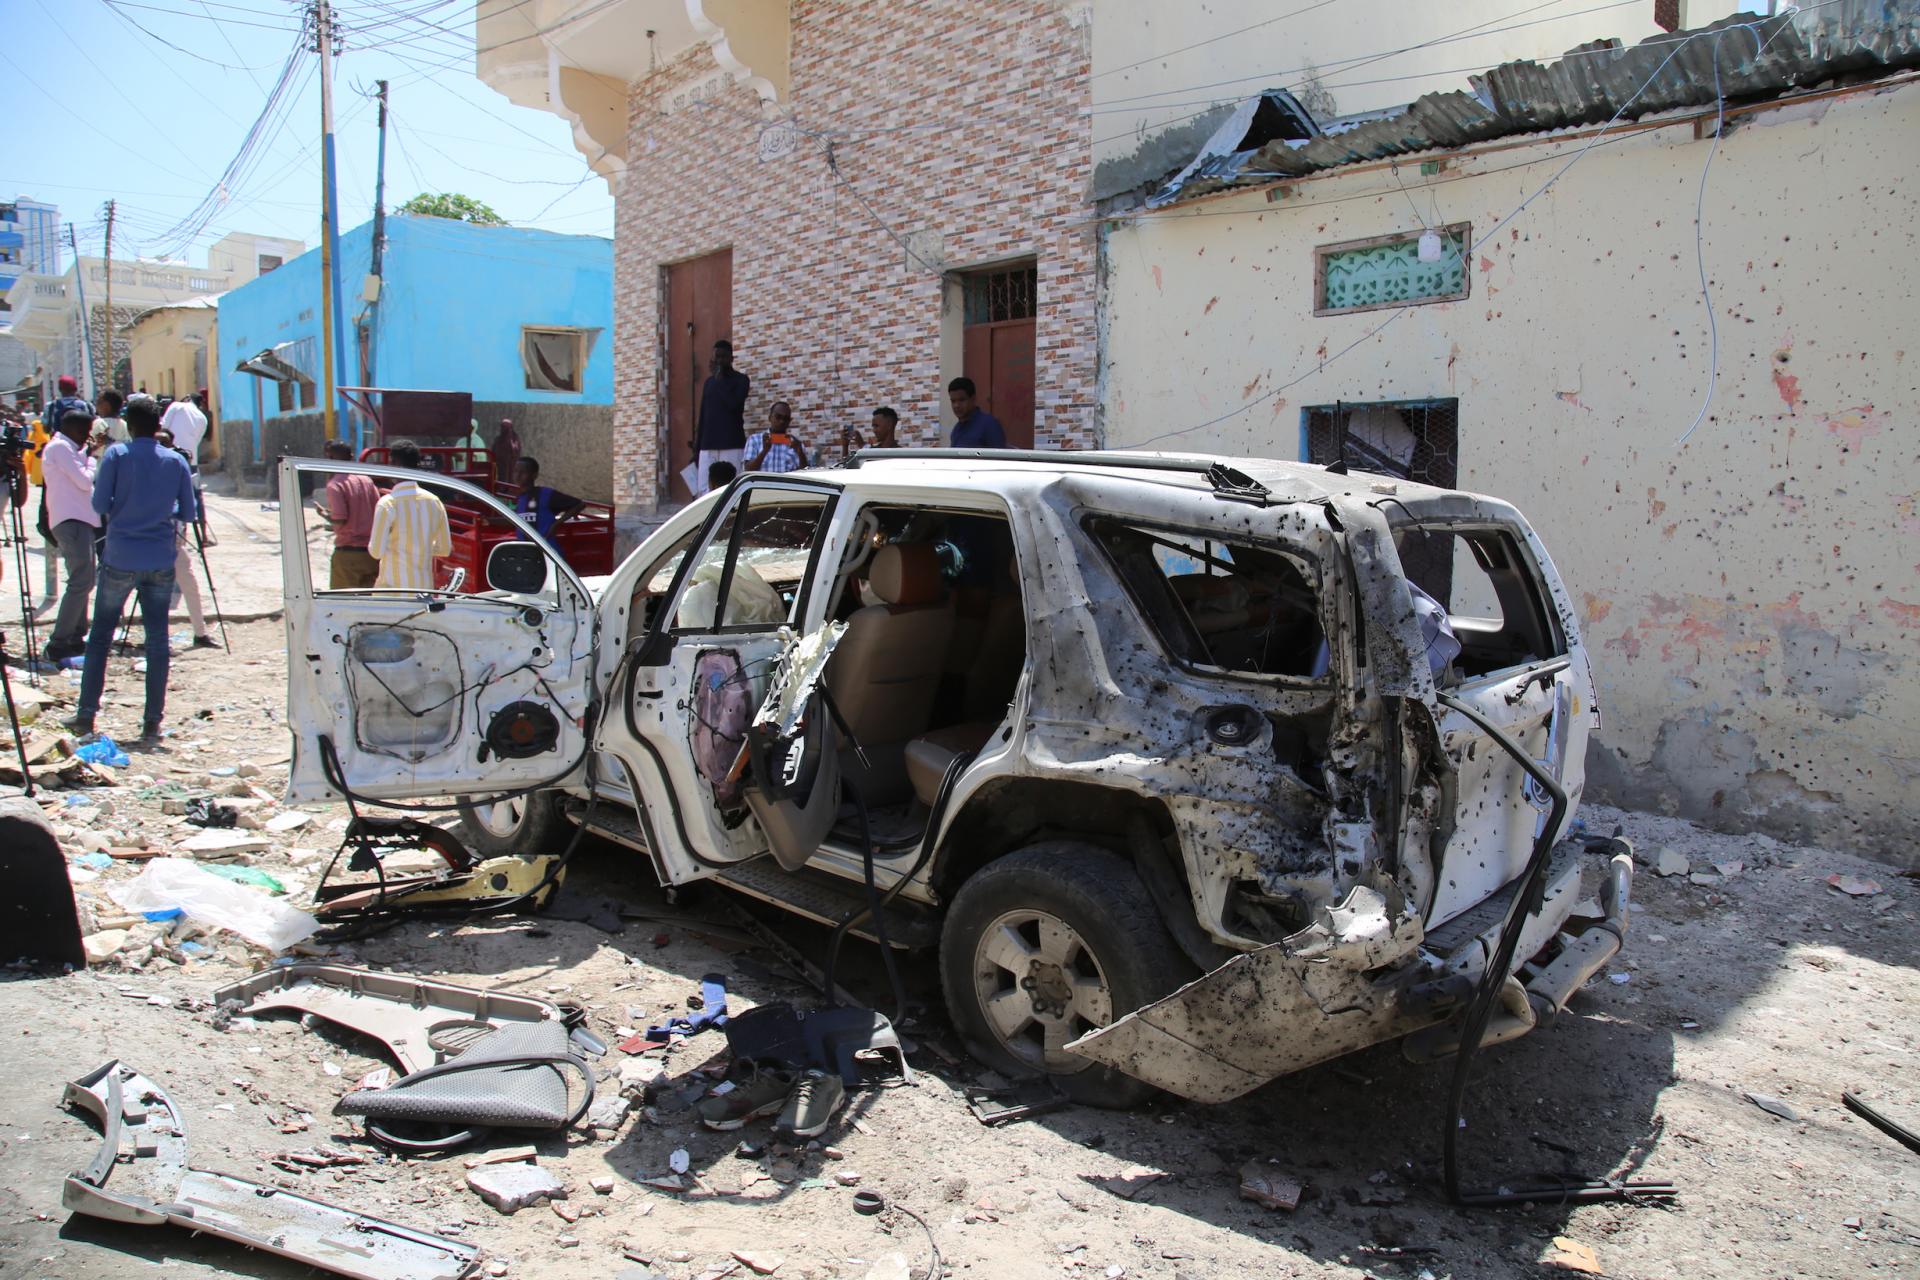 Βομβιστική επίθεση στη Σομαλία